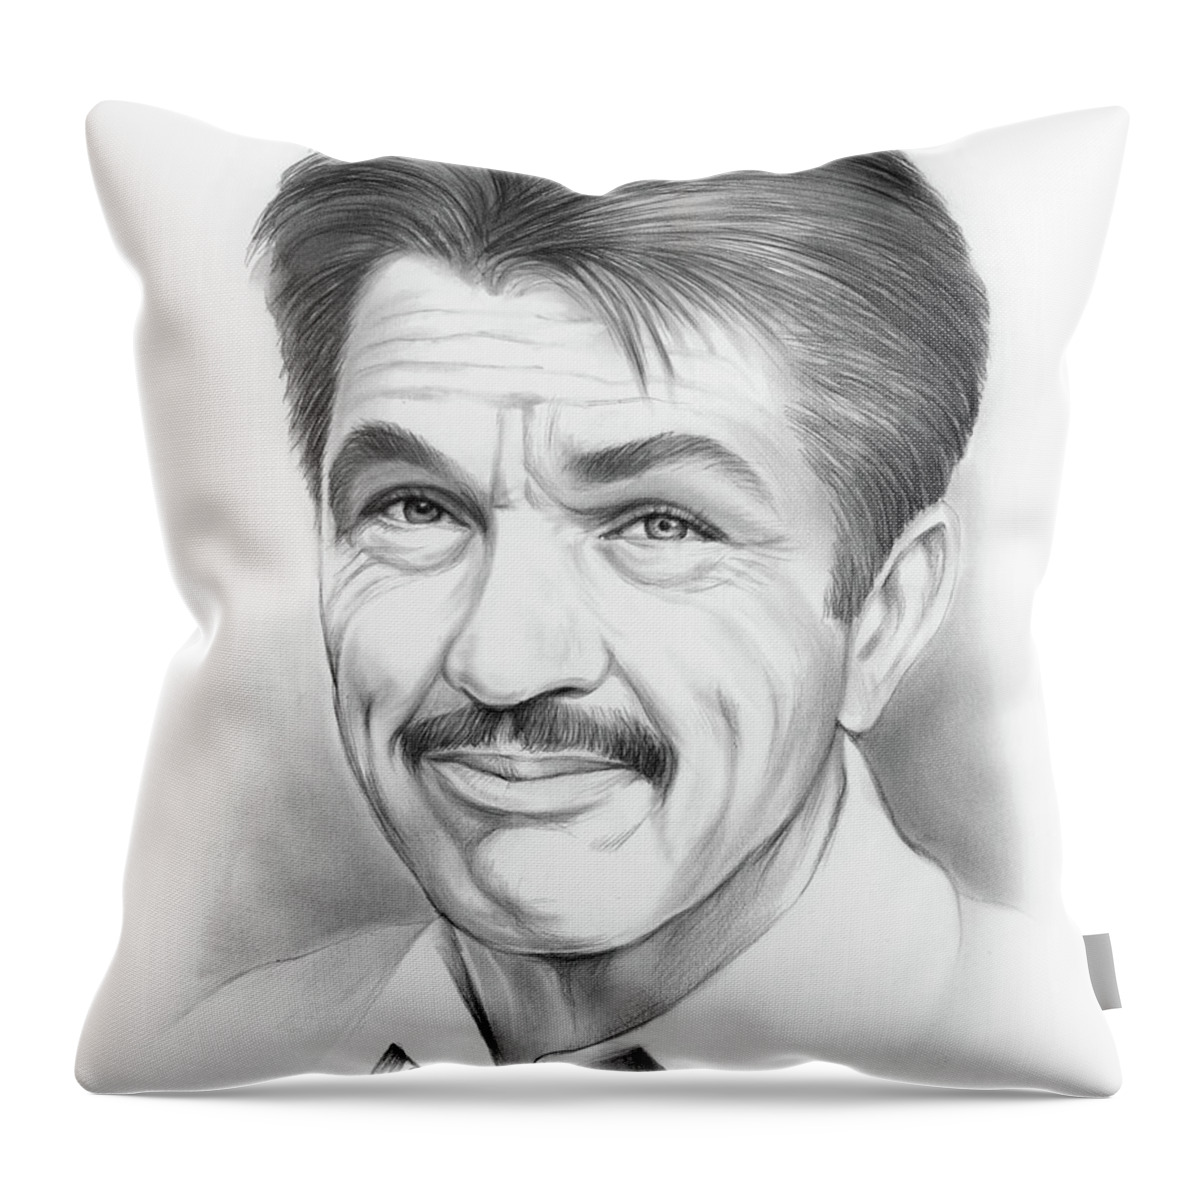 Tom Skerritt Throw Pillow featuring the drawing Tom Skerritt by Greg Joens